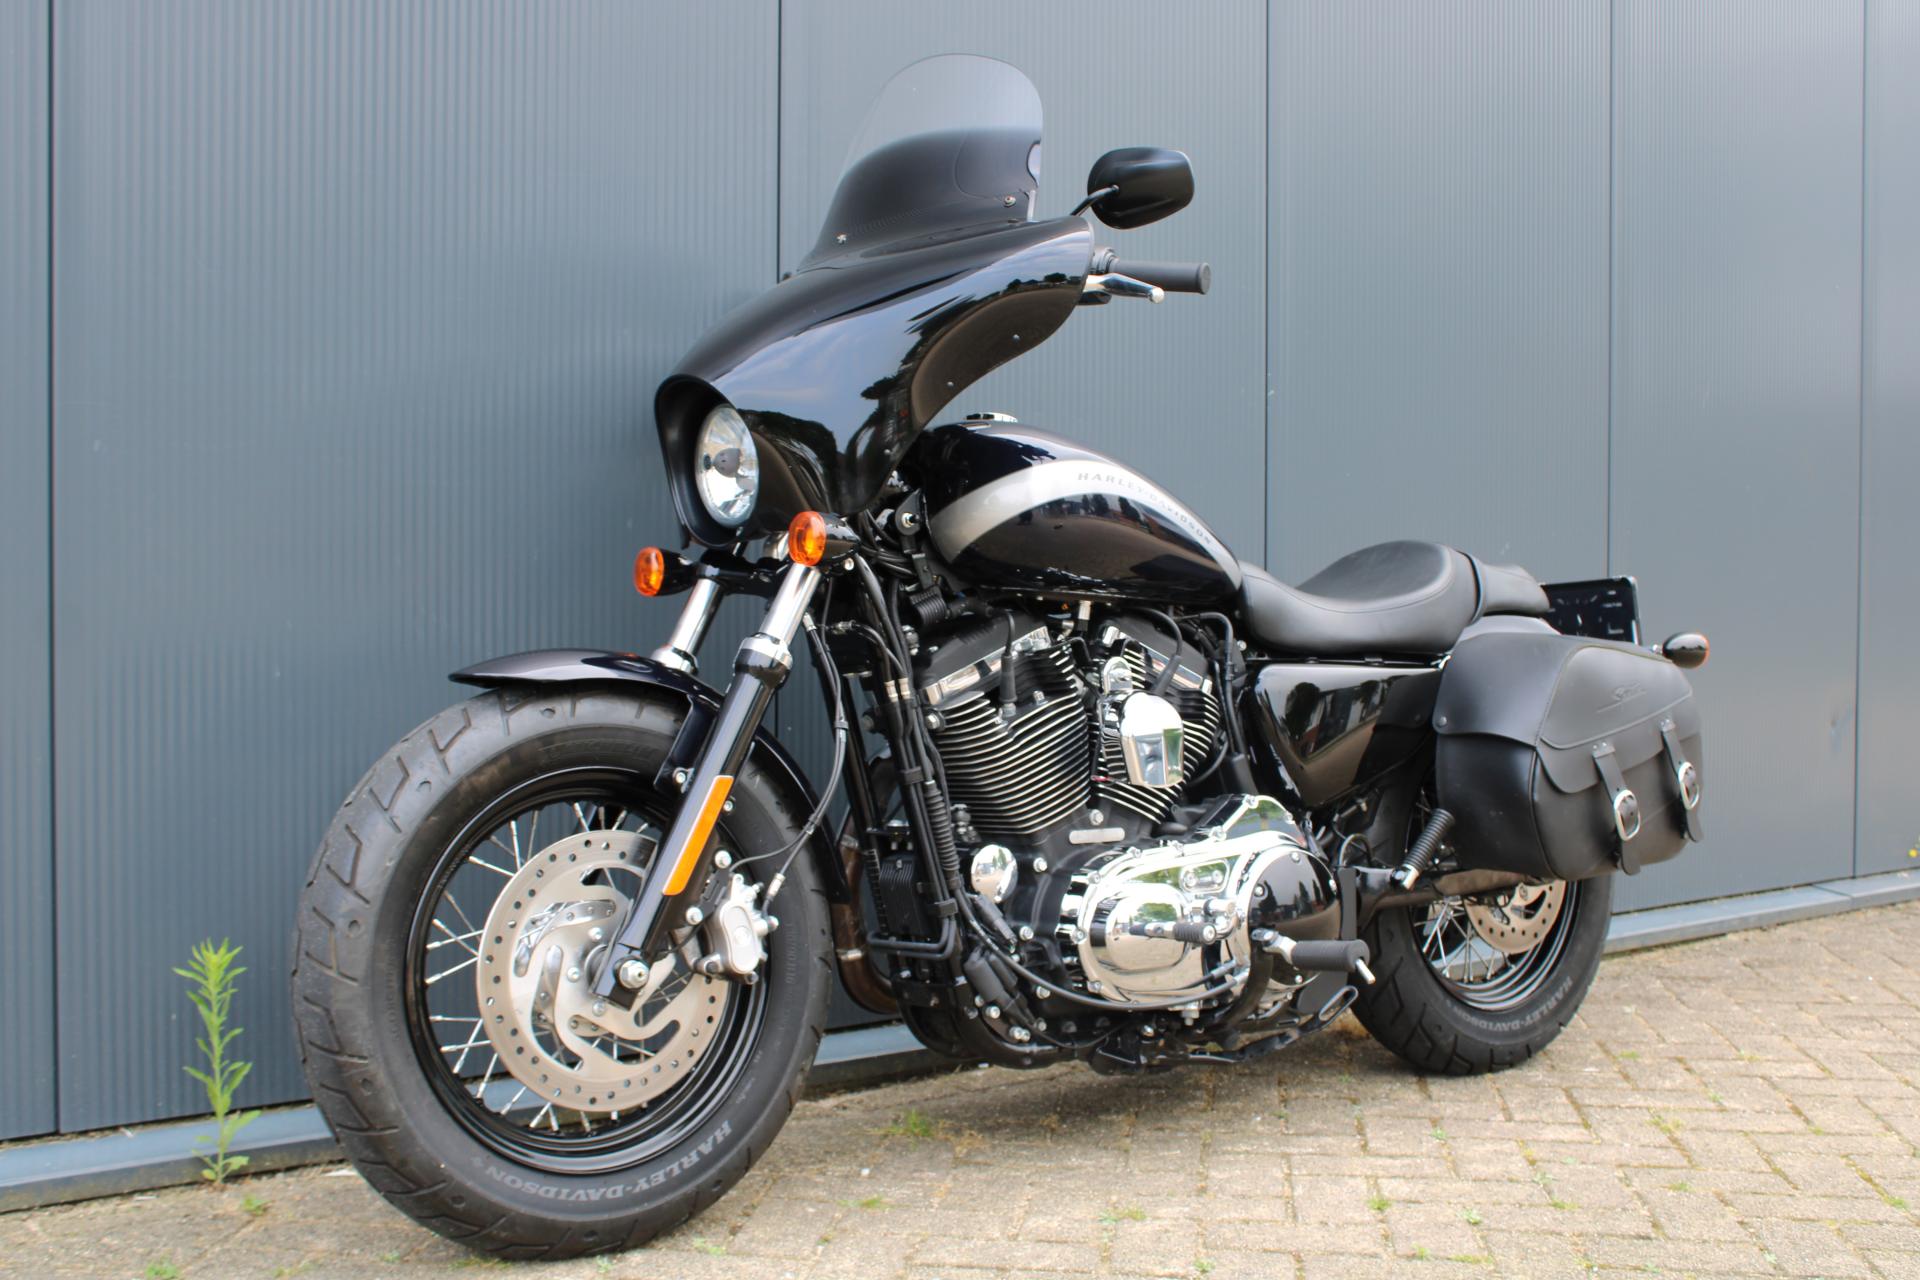 Harley Davidson 1200 CUSTOM (18061067666cd5728.37051654.JPG)